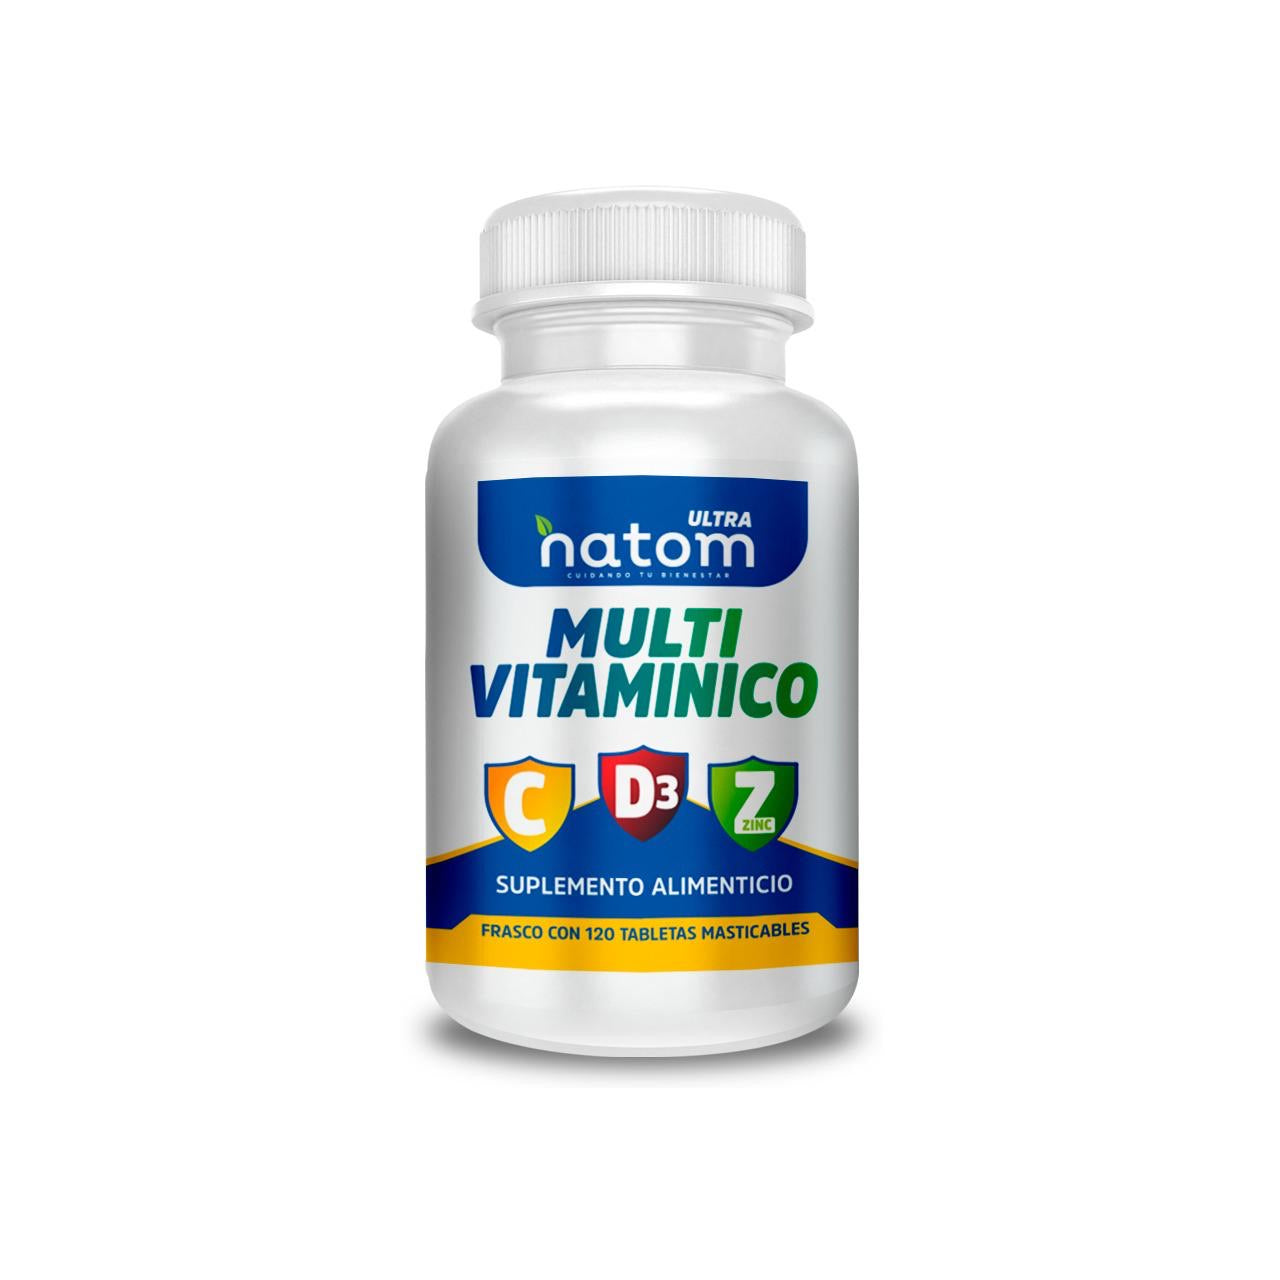 Natom multivitaminico, Vitamina C, D y Zinc